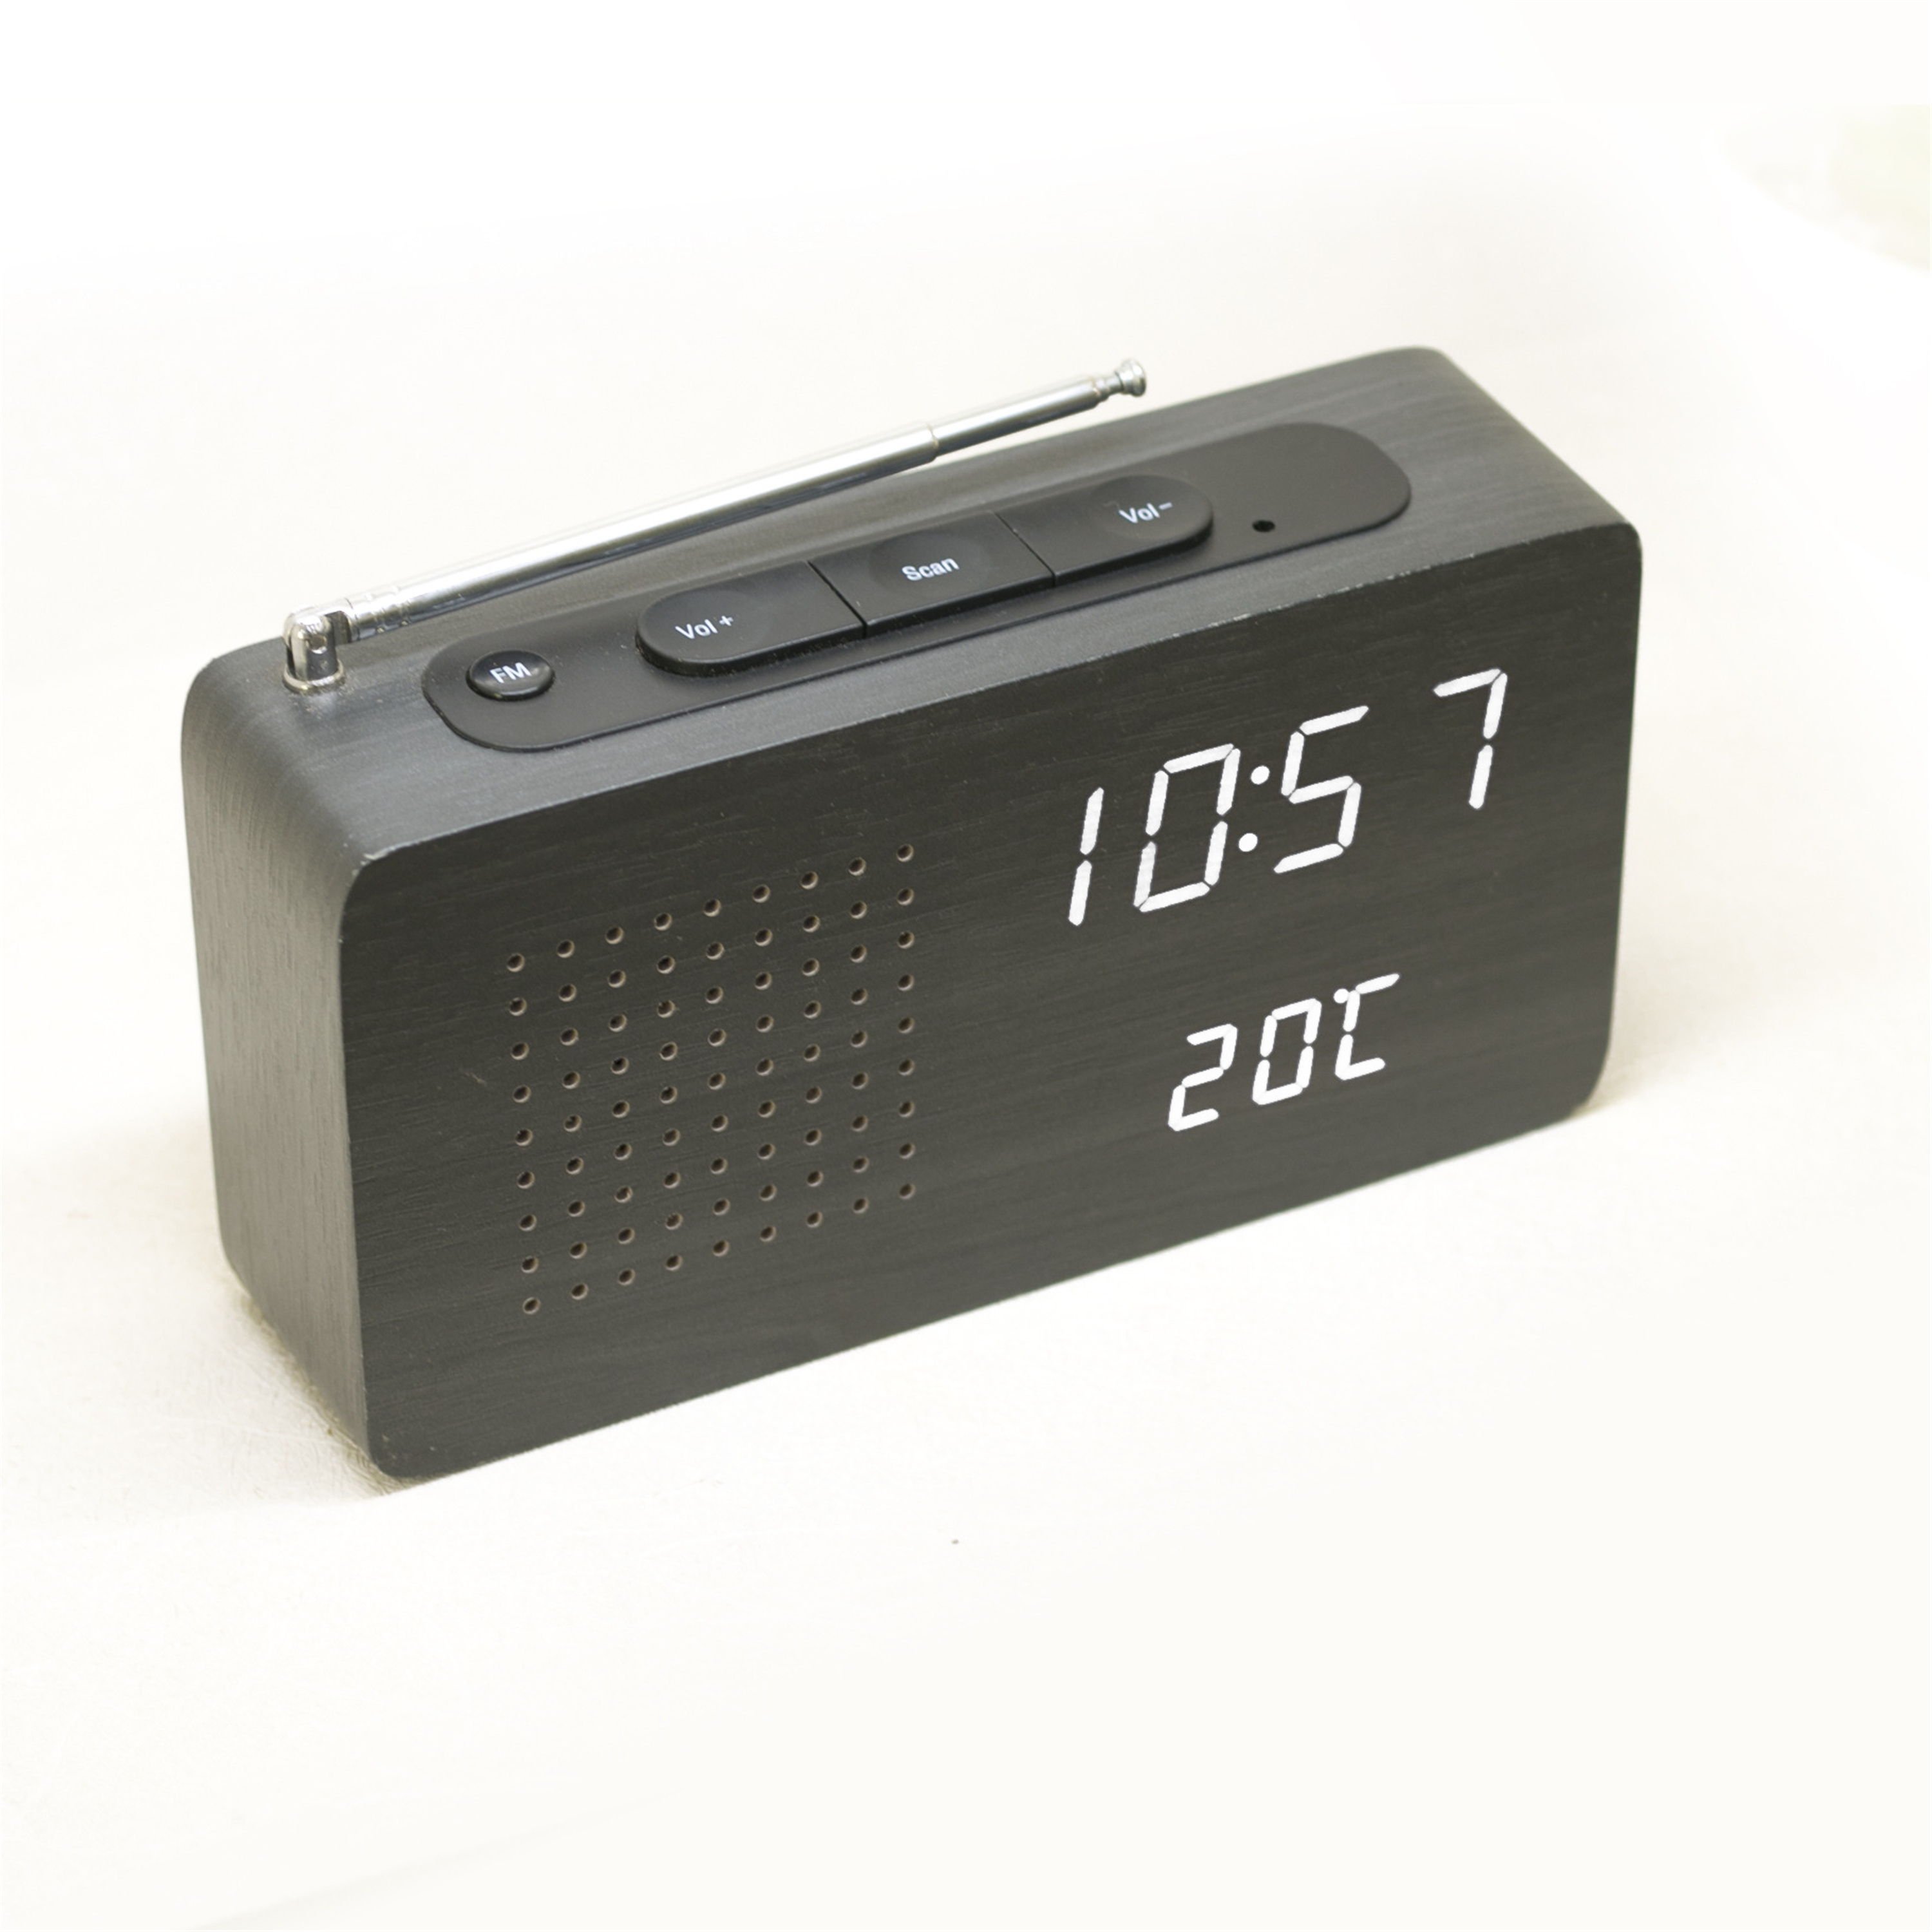 Vintage wood FM radio time temperature acoustic wood clock LED digital radio alarm clock